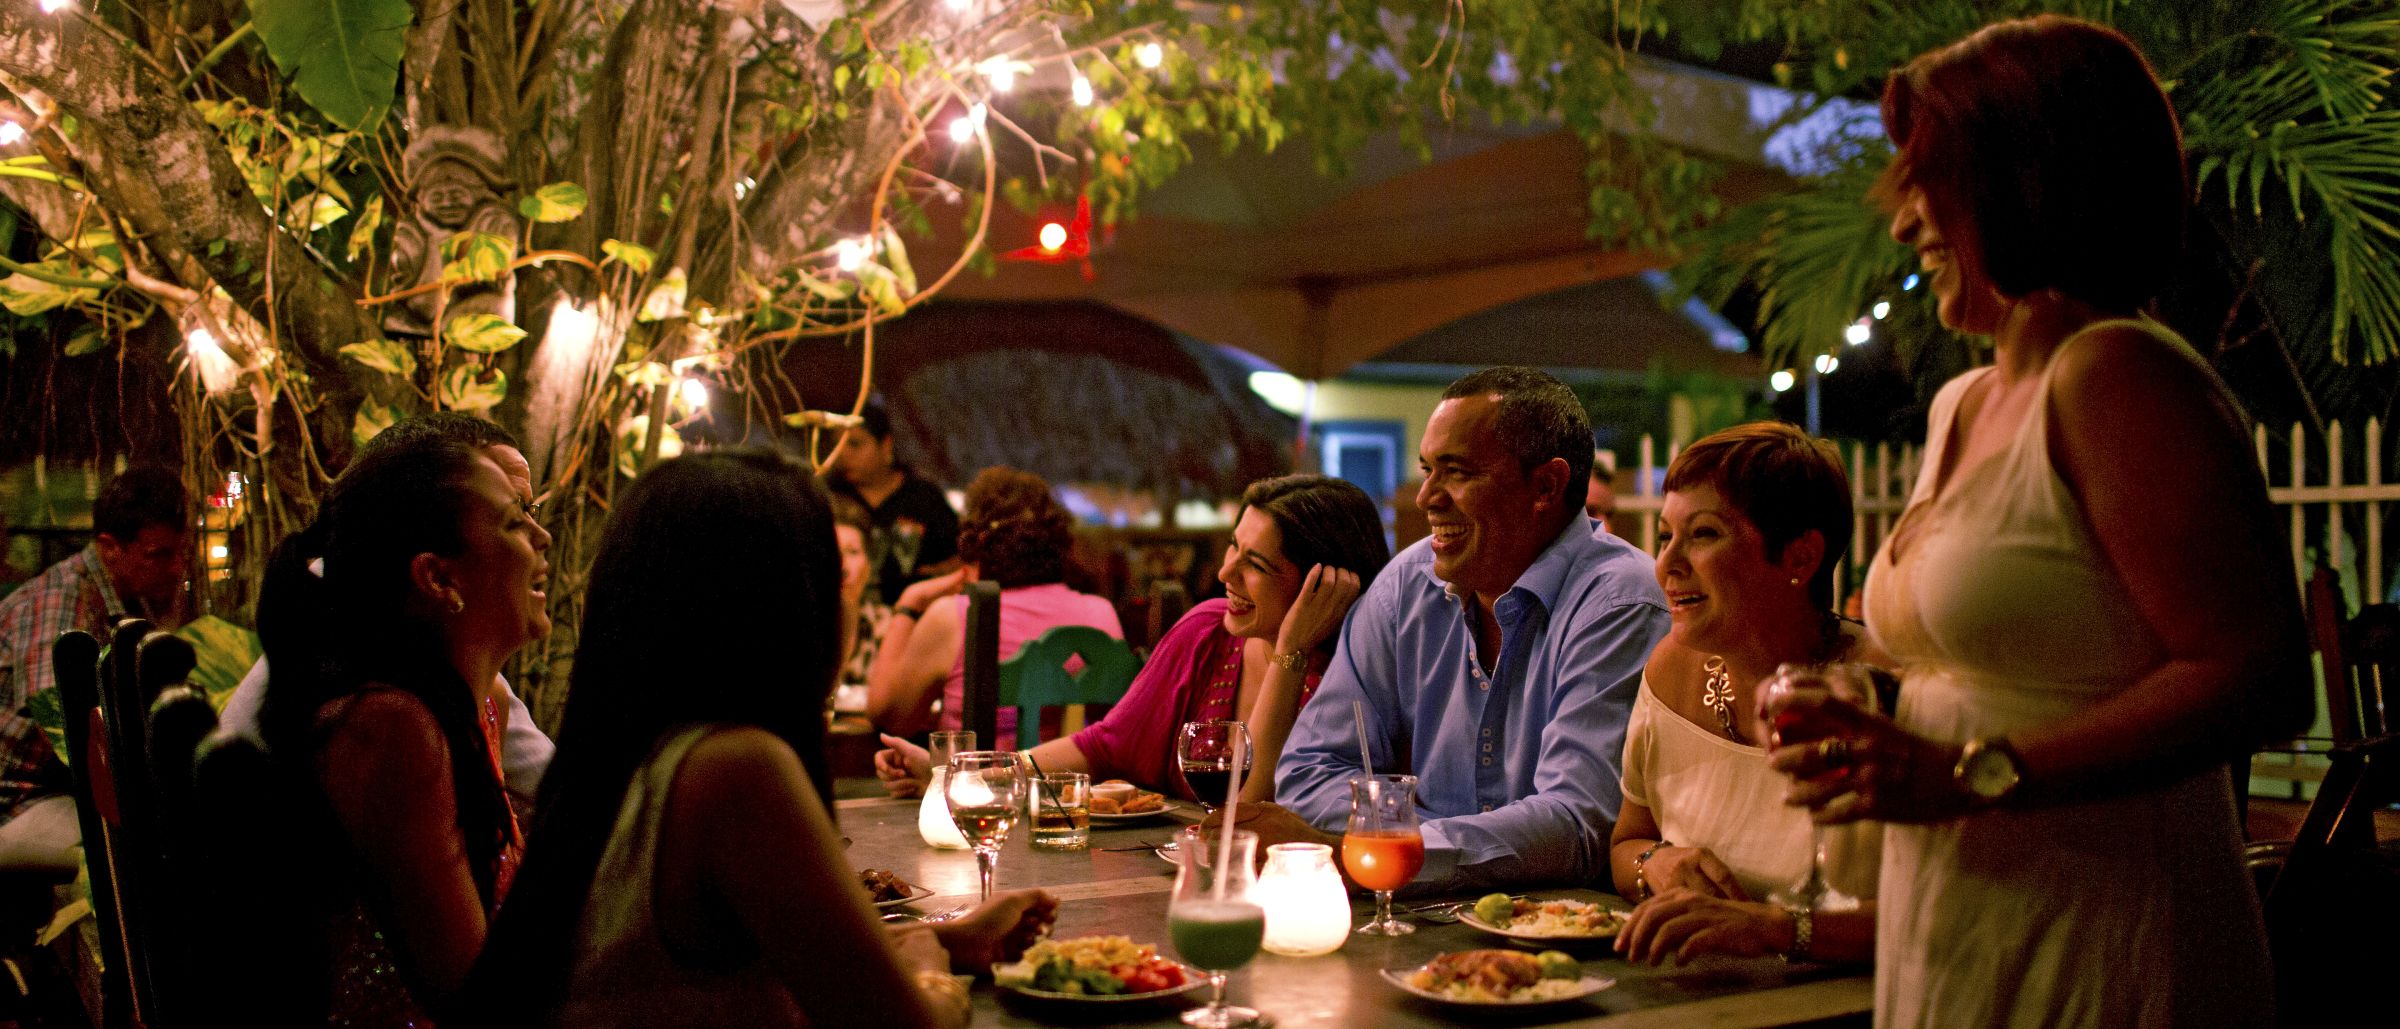 An lauen tropischen Abenden in Curaçao kommt man gern ins Gespräch